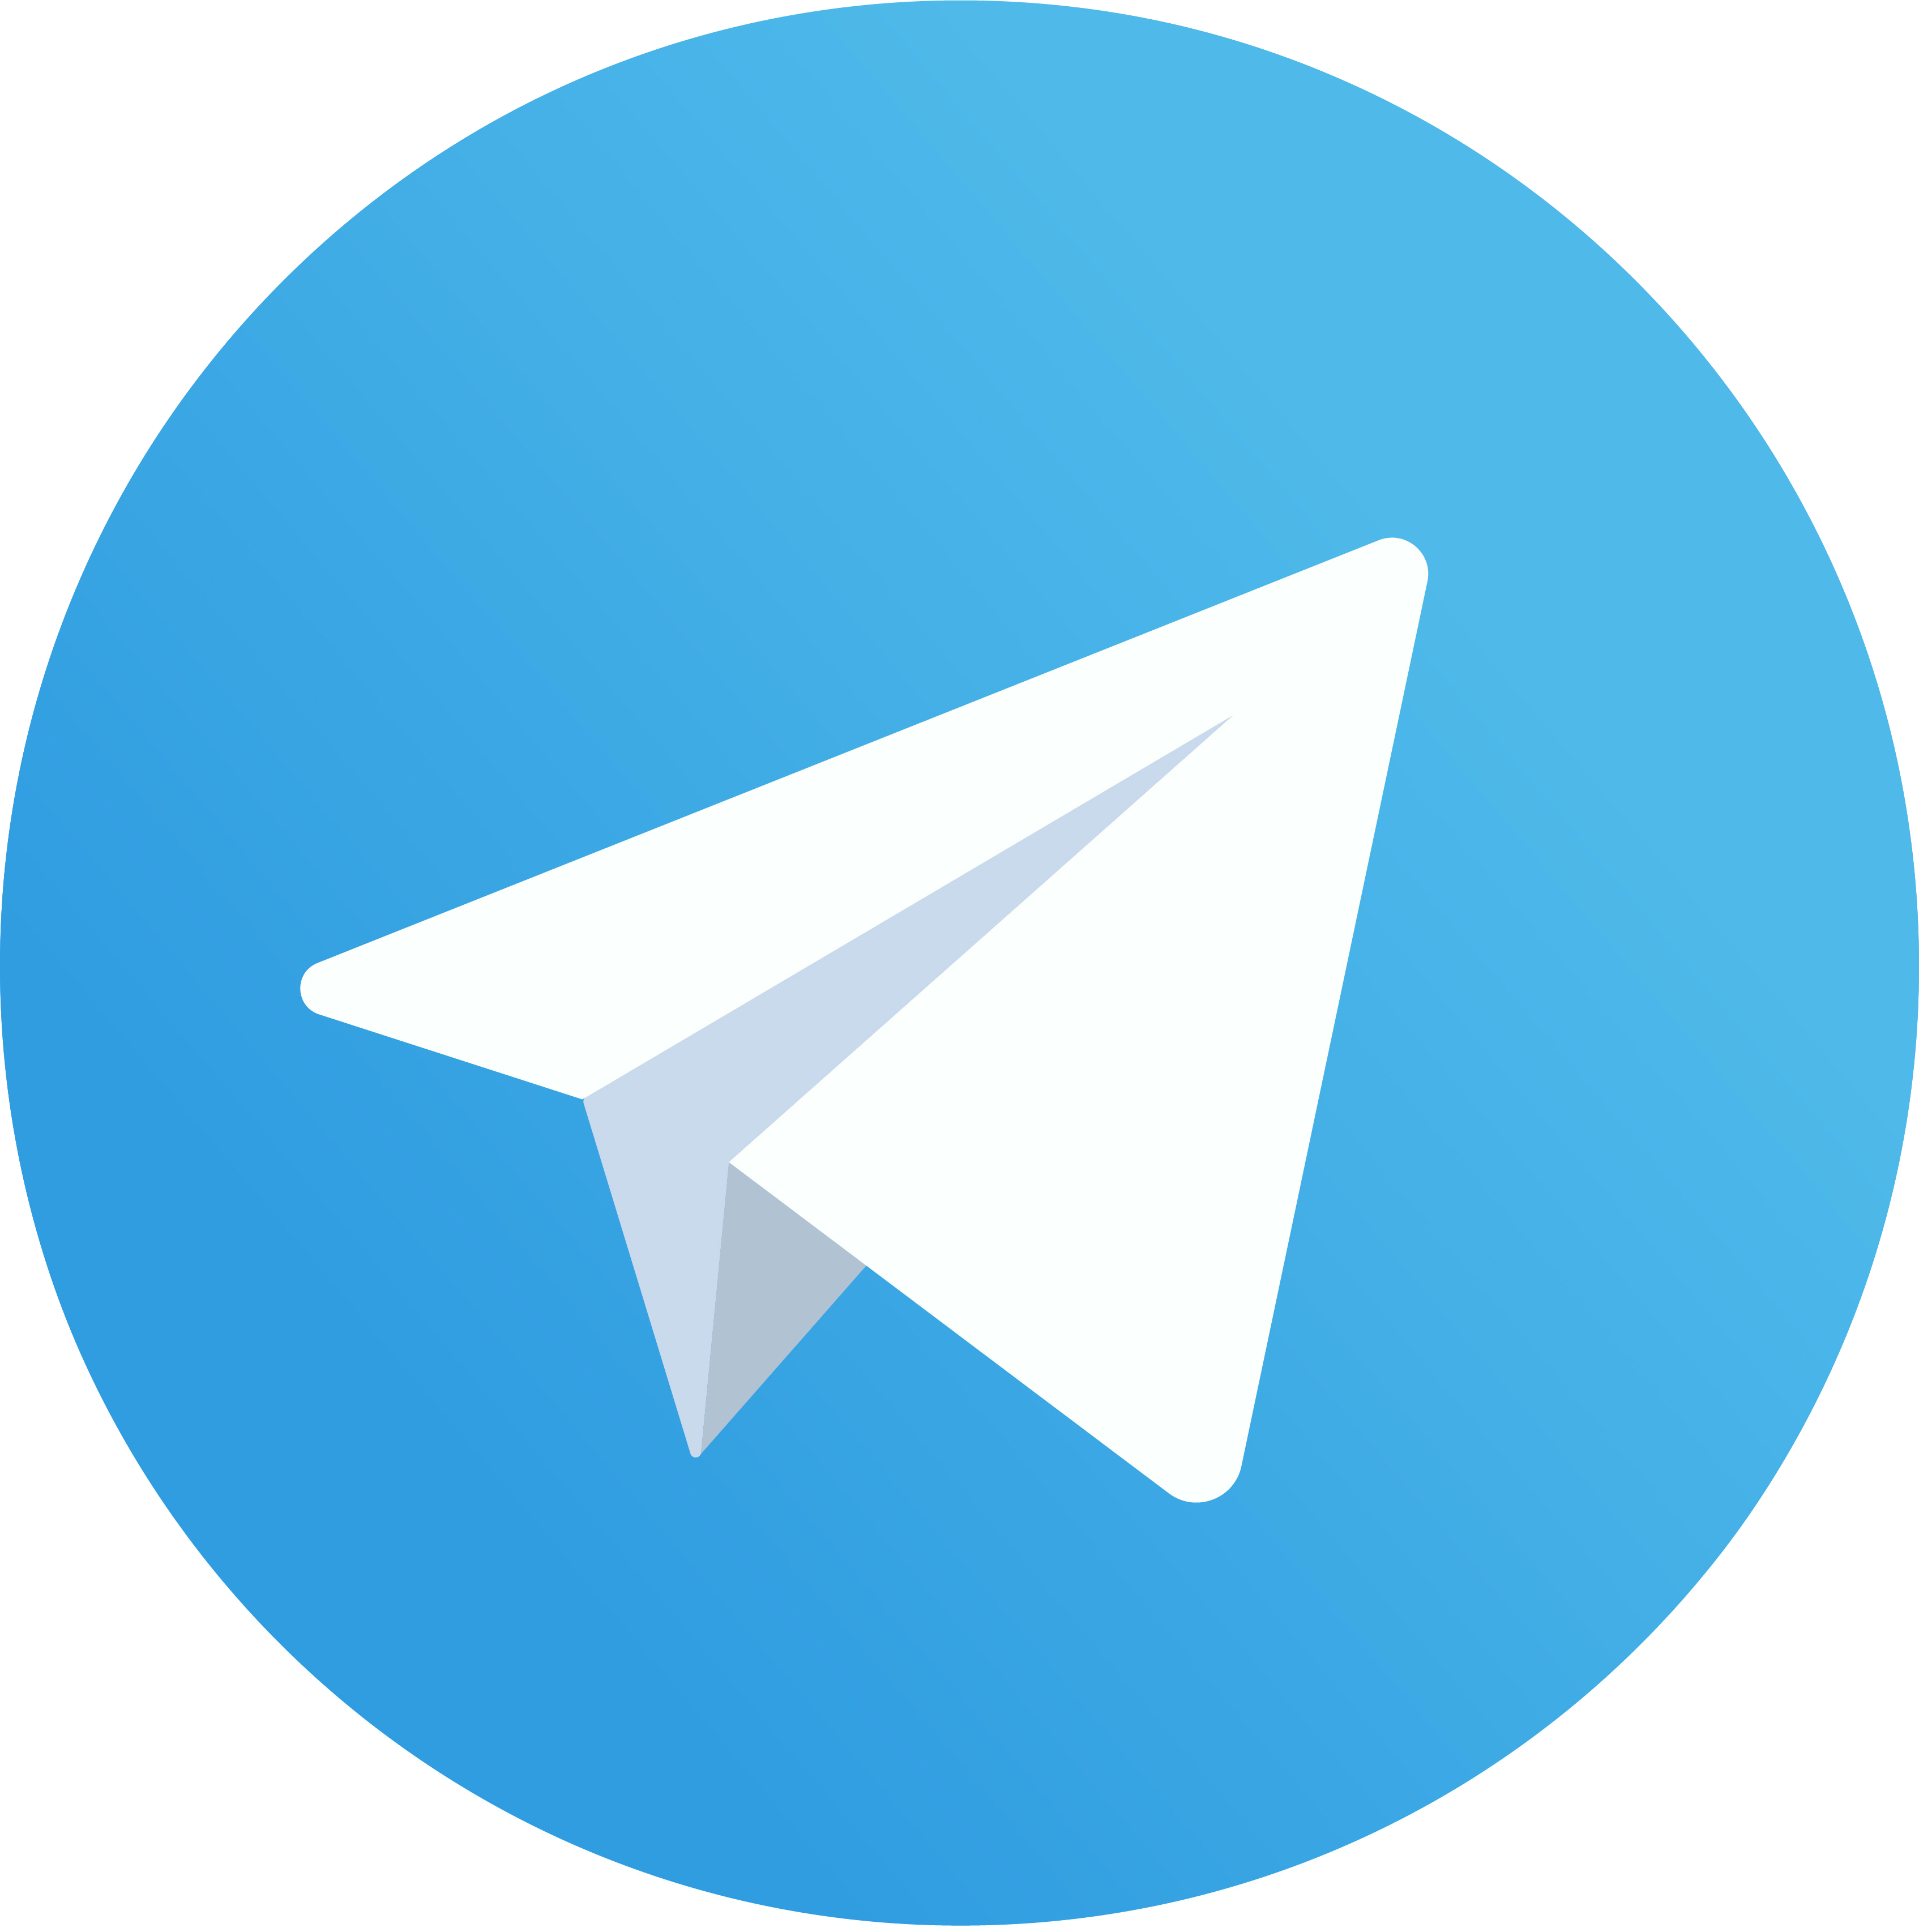 Анонсы мероприятий и работающие бизнес-советы для бизнеса — в нашем Telegram-канале